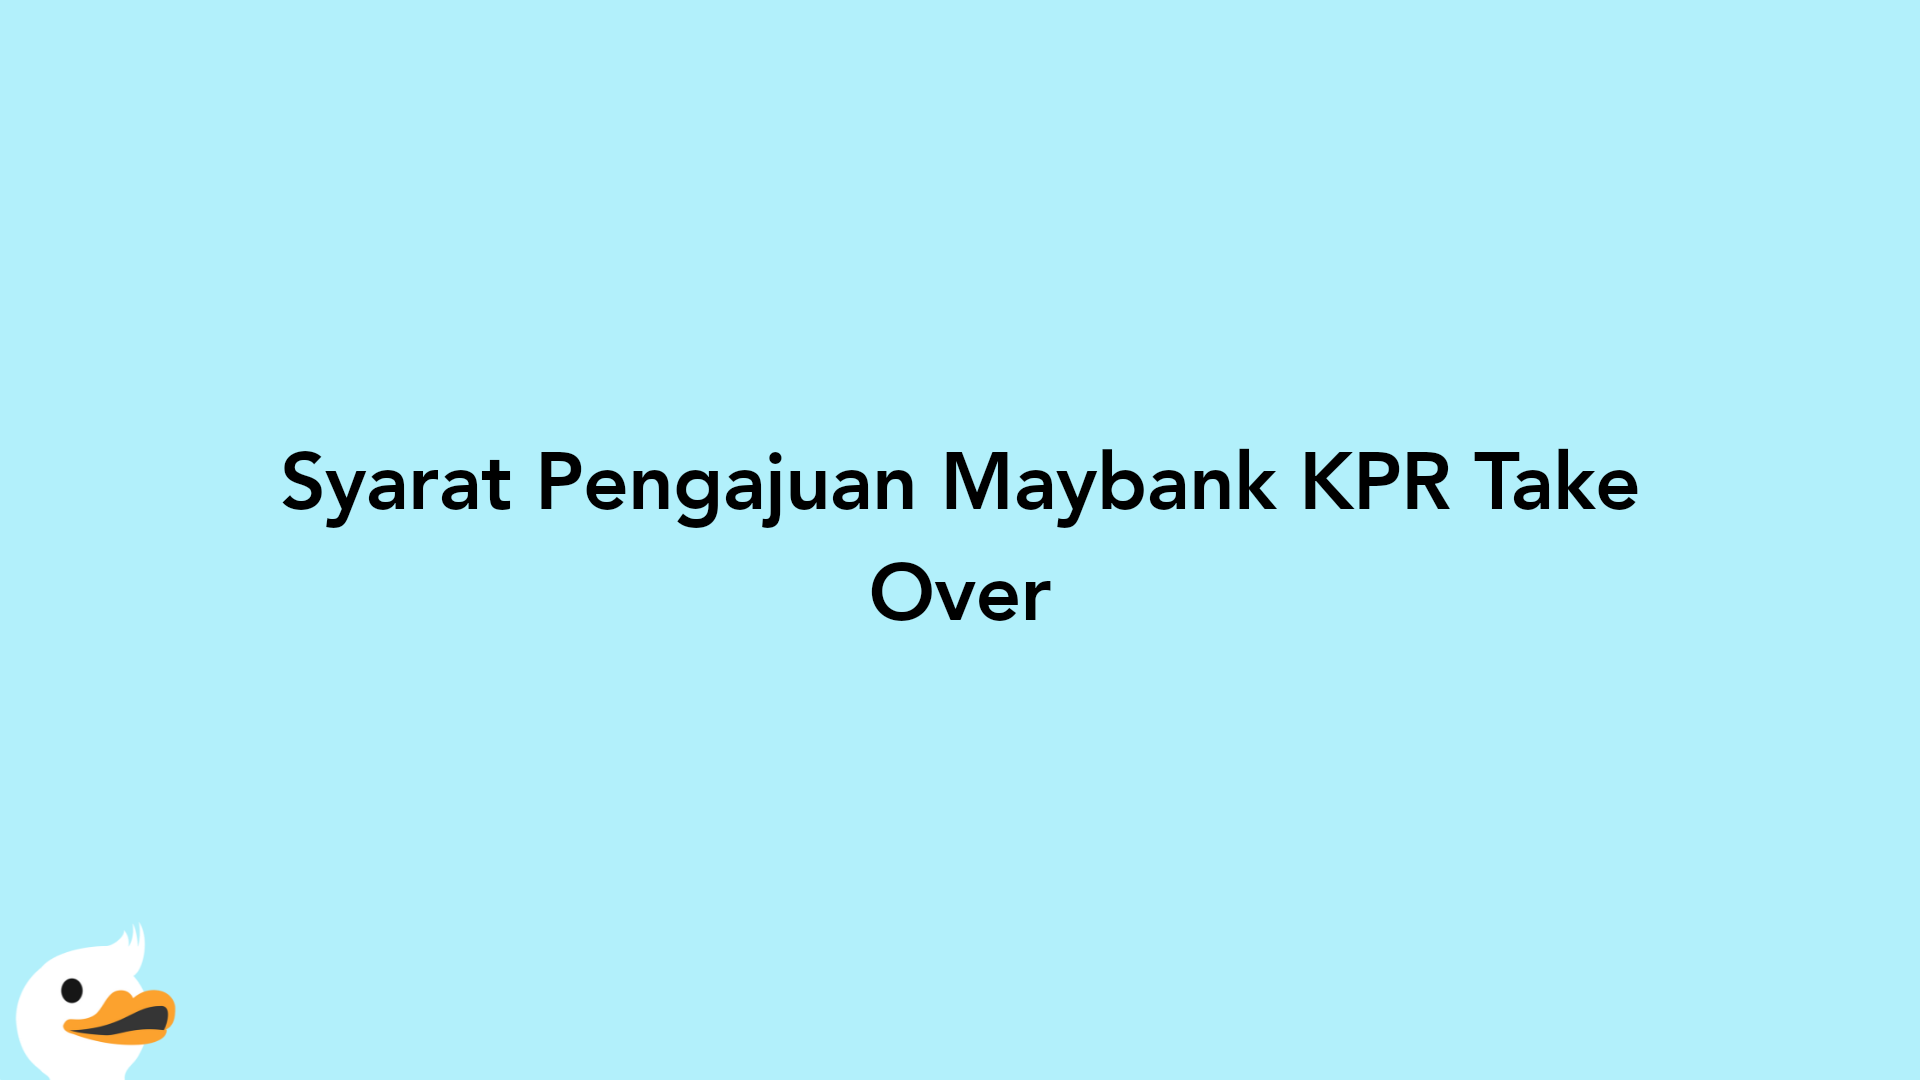 Syarat Pengajuan Maybank KPR Take Over